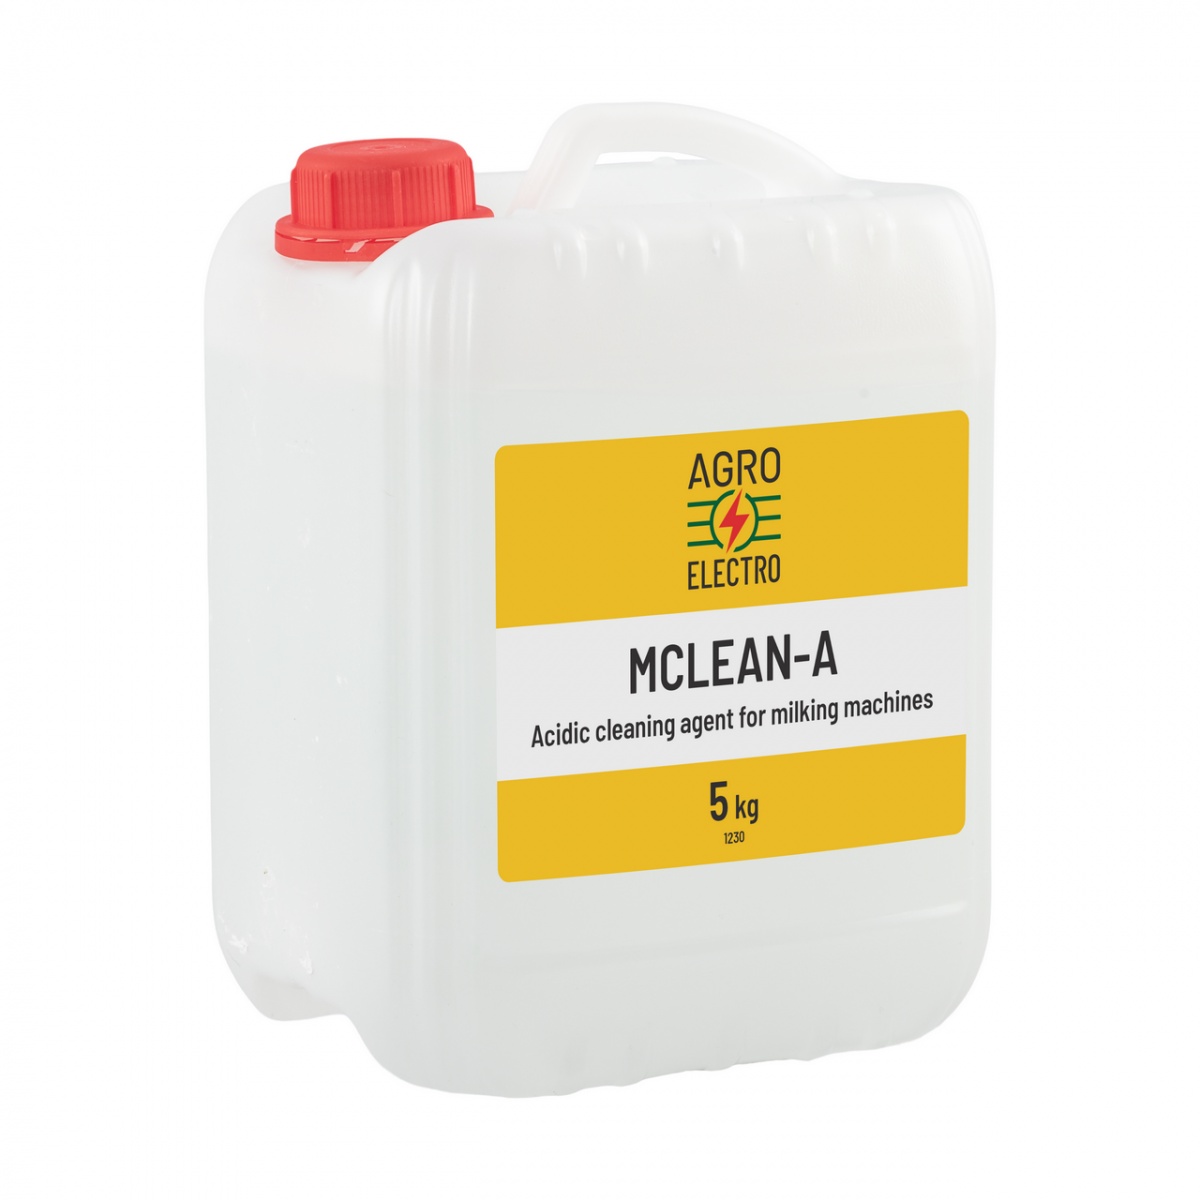 Detergent acidic pentru curățarea aparatelor de muls, MCLEAN-A, 5 kg